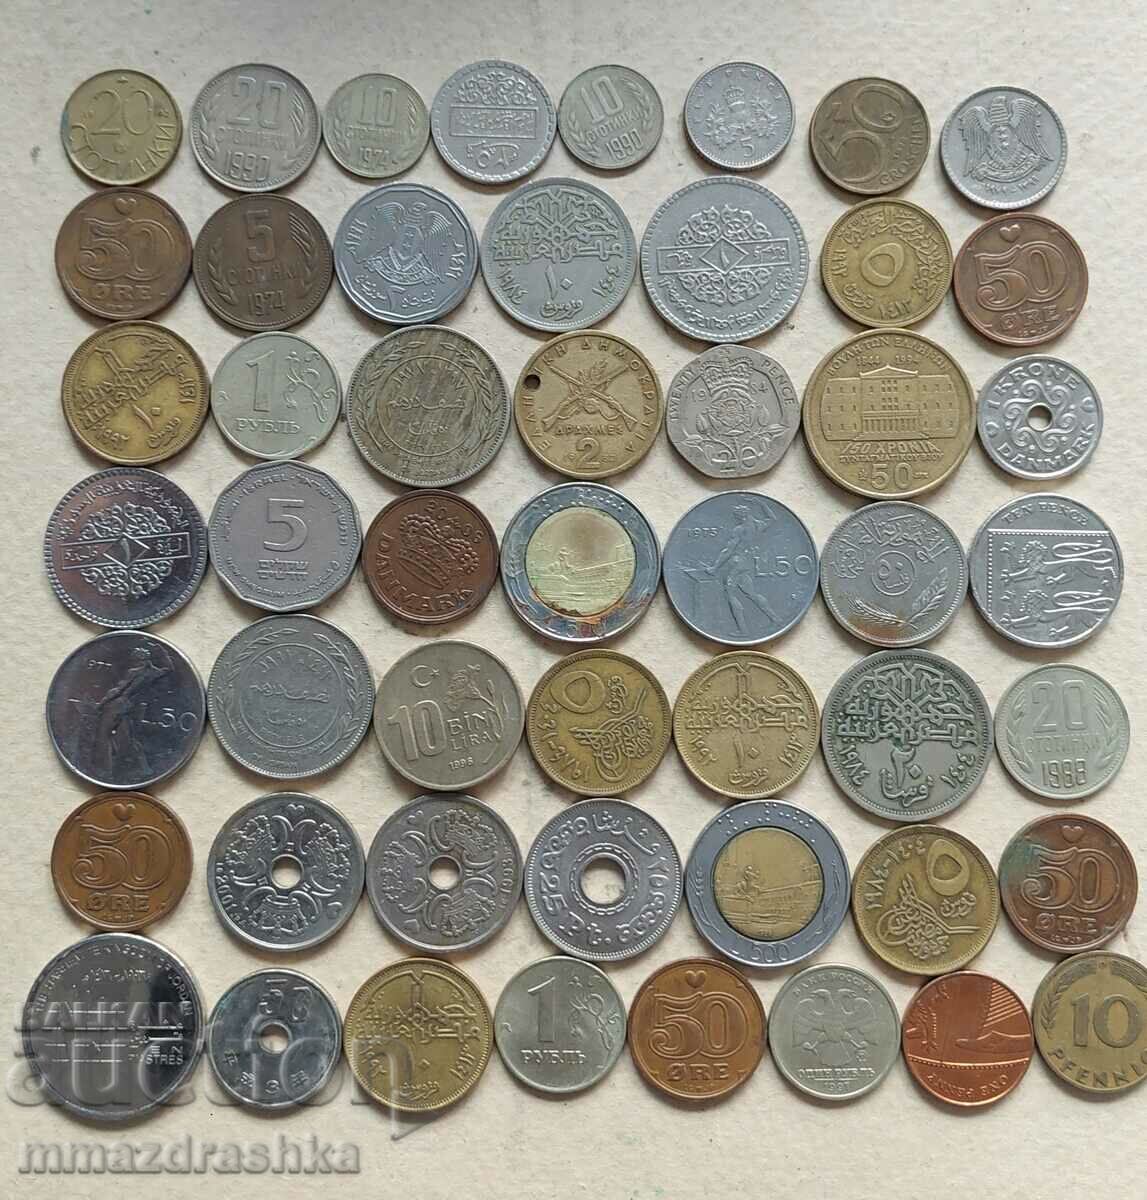 50 αραβικά και άλλα νομίσματα